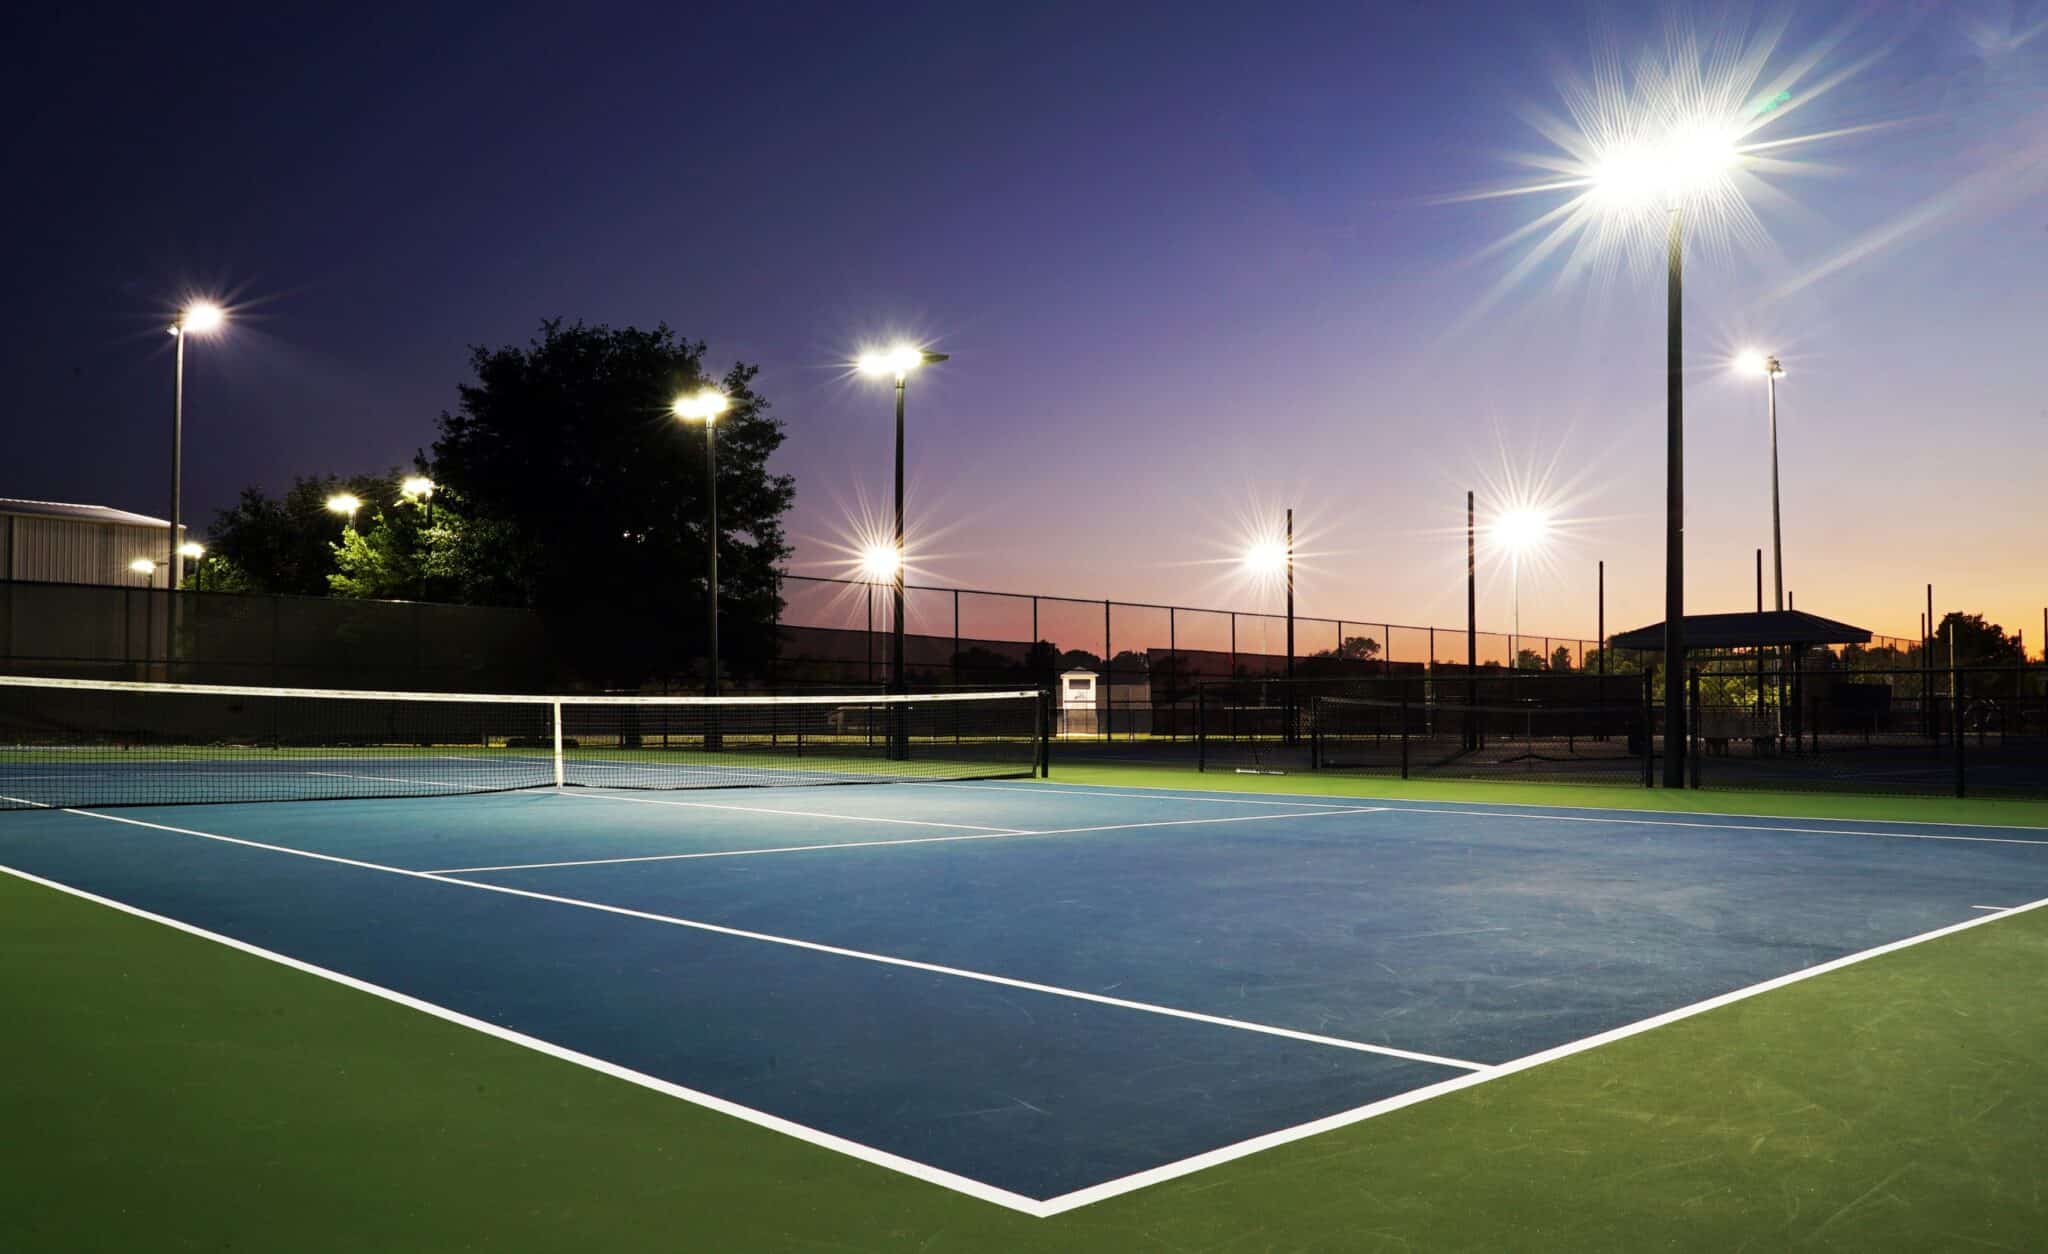 Eclairage d'un terrain de tenis à Sarasota avec des lampadaires solaires